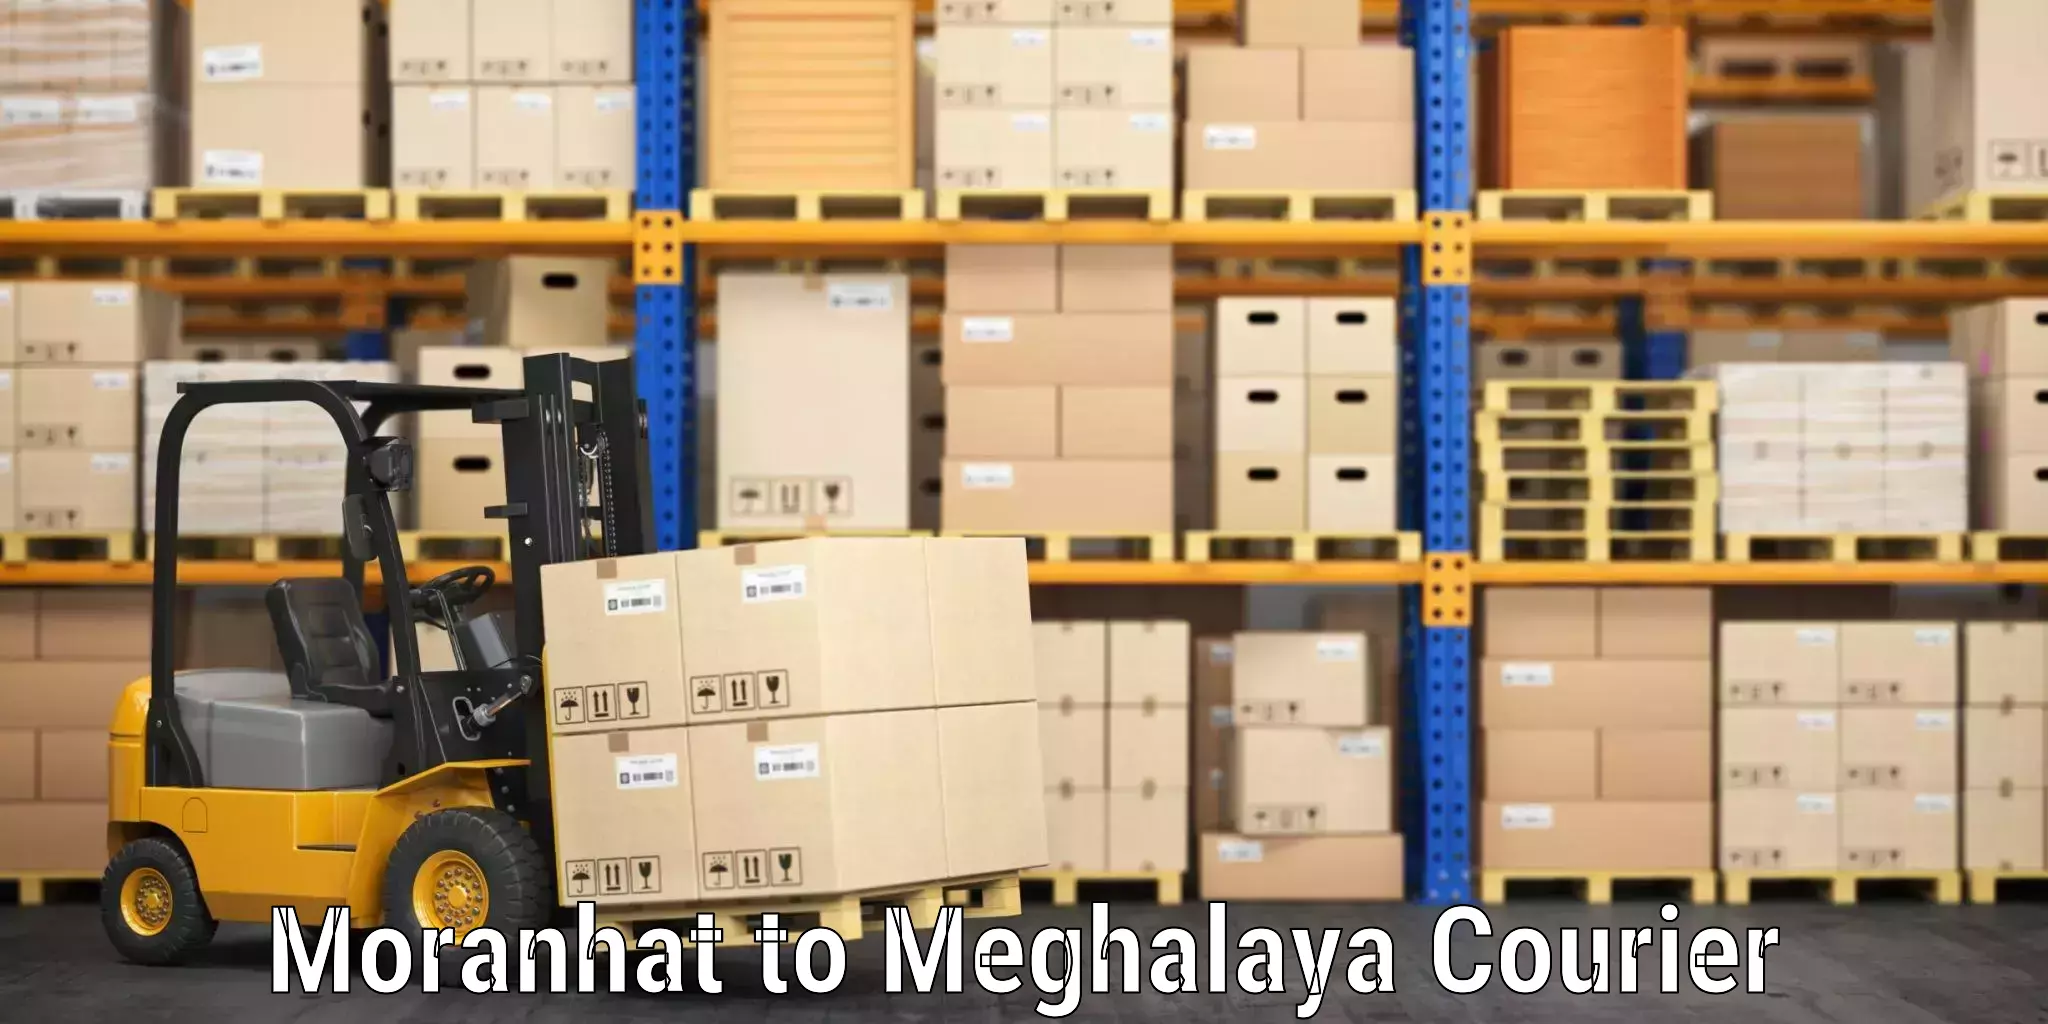 Professional baggage transport Moranhat to Meghalaya